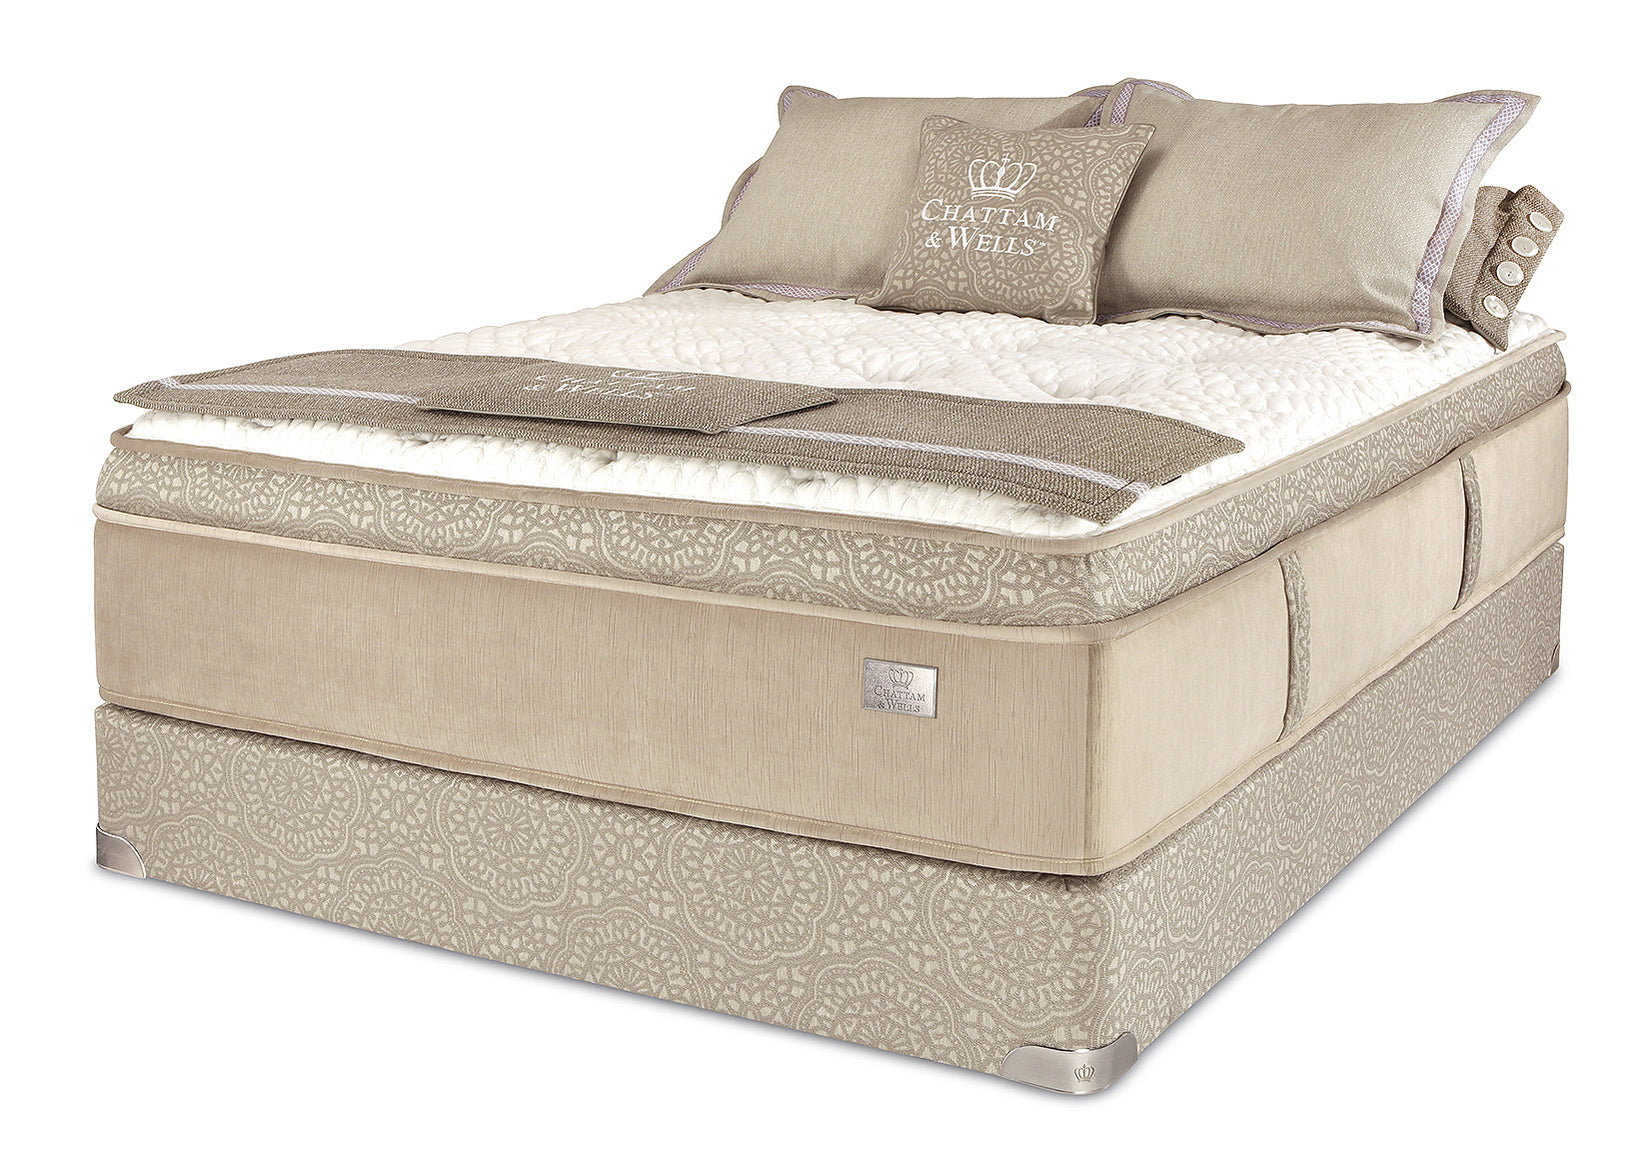 chattam and wells meier luxury pillow top mattress